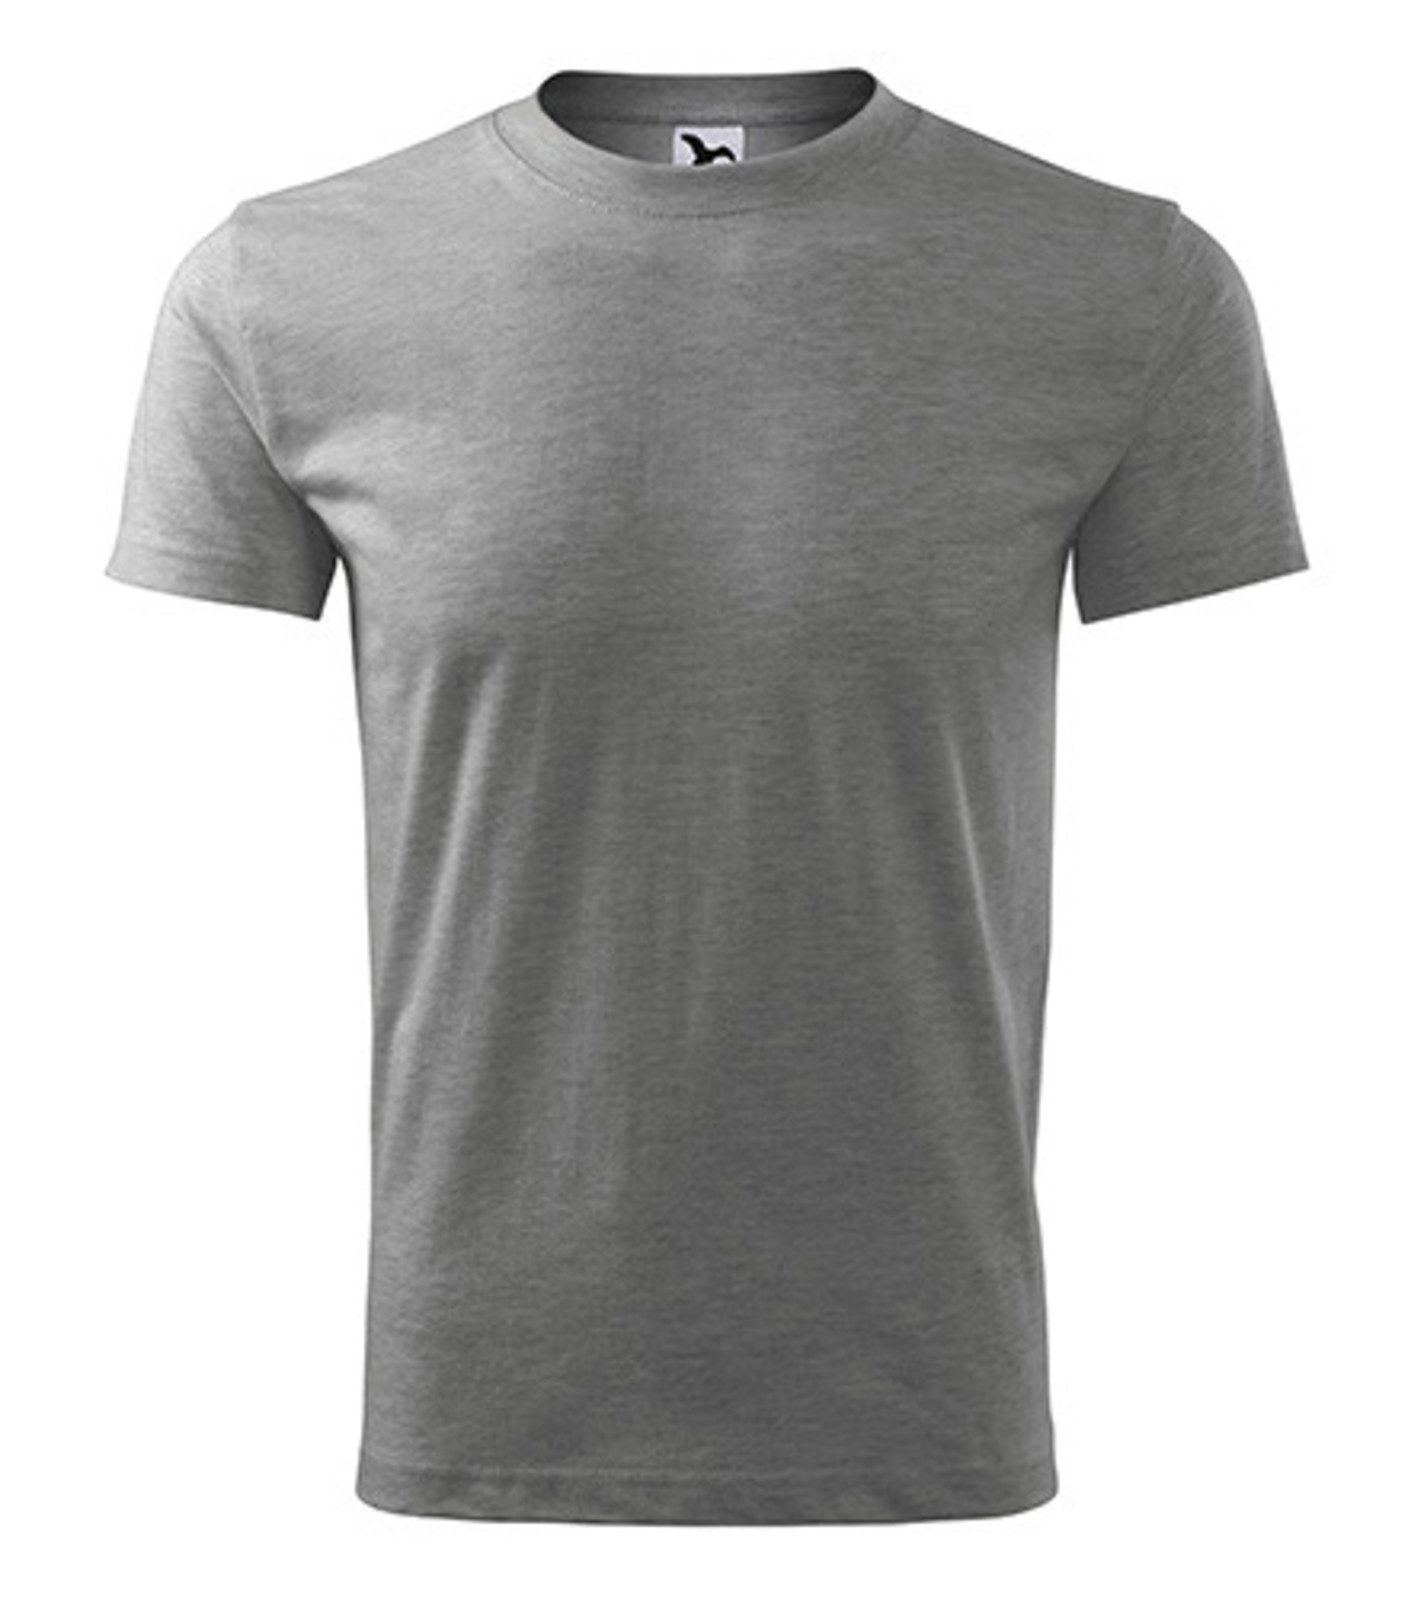 Pánske tričko Adler Classic New 132 - veľkosť: XXL, farba: tmavosivý melír